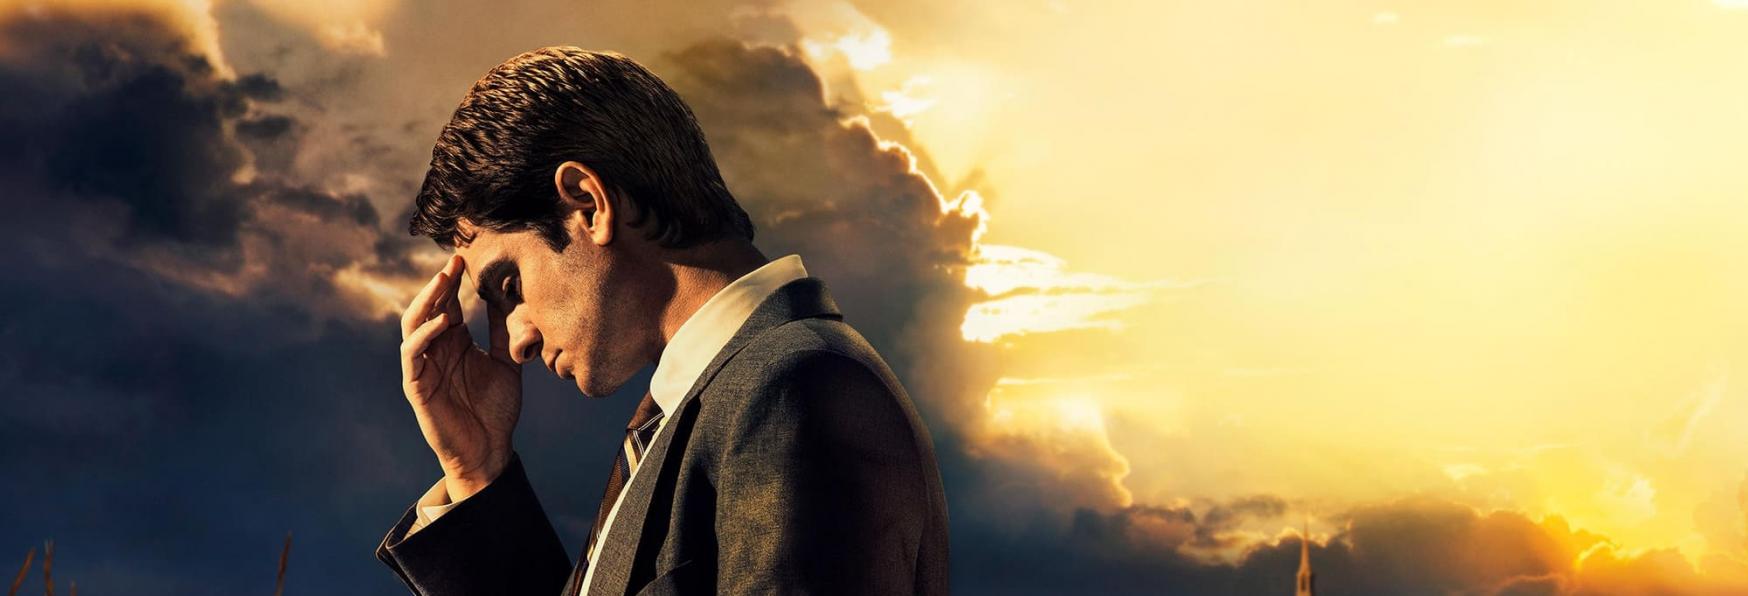 In Nome del Cielo: il Trailer e la Data di Uscita Italiana della Serie TV con Andrew Garfield, in arrivo su Disney+